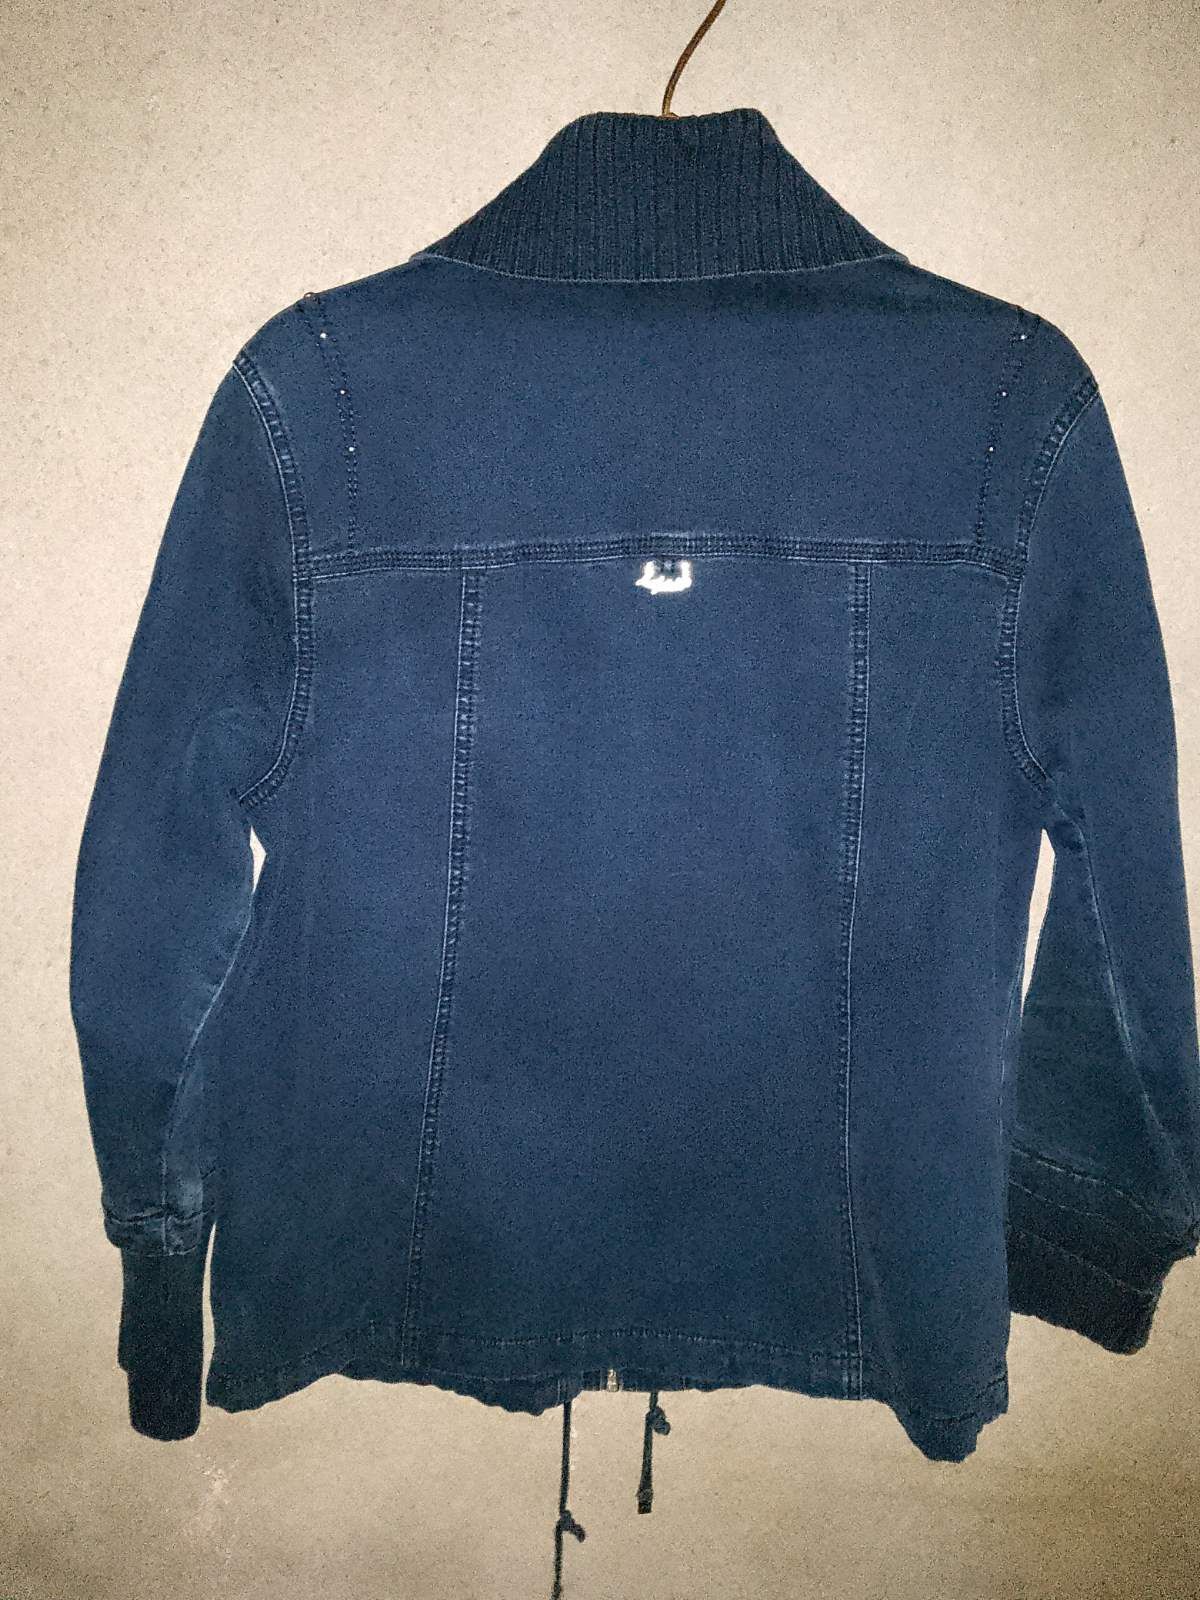 Ціна за 2!!!Джинсова куртка, курточка на 50-52 рр